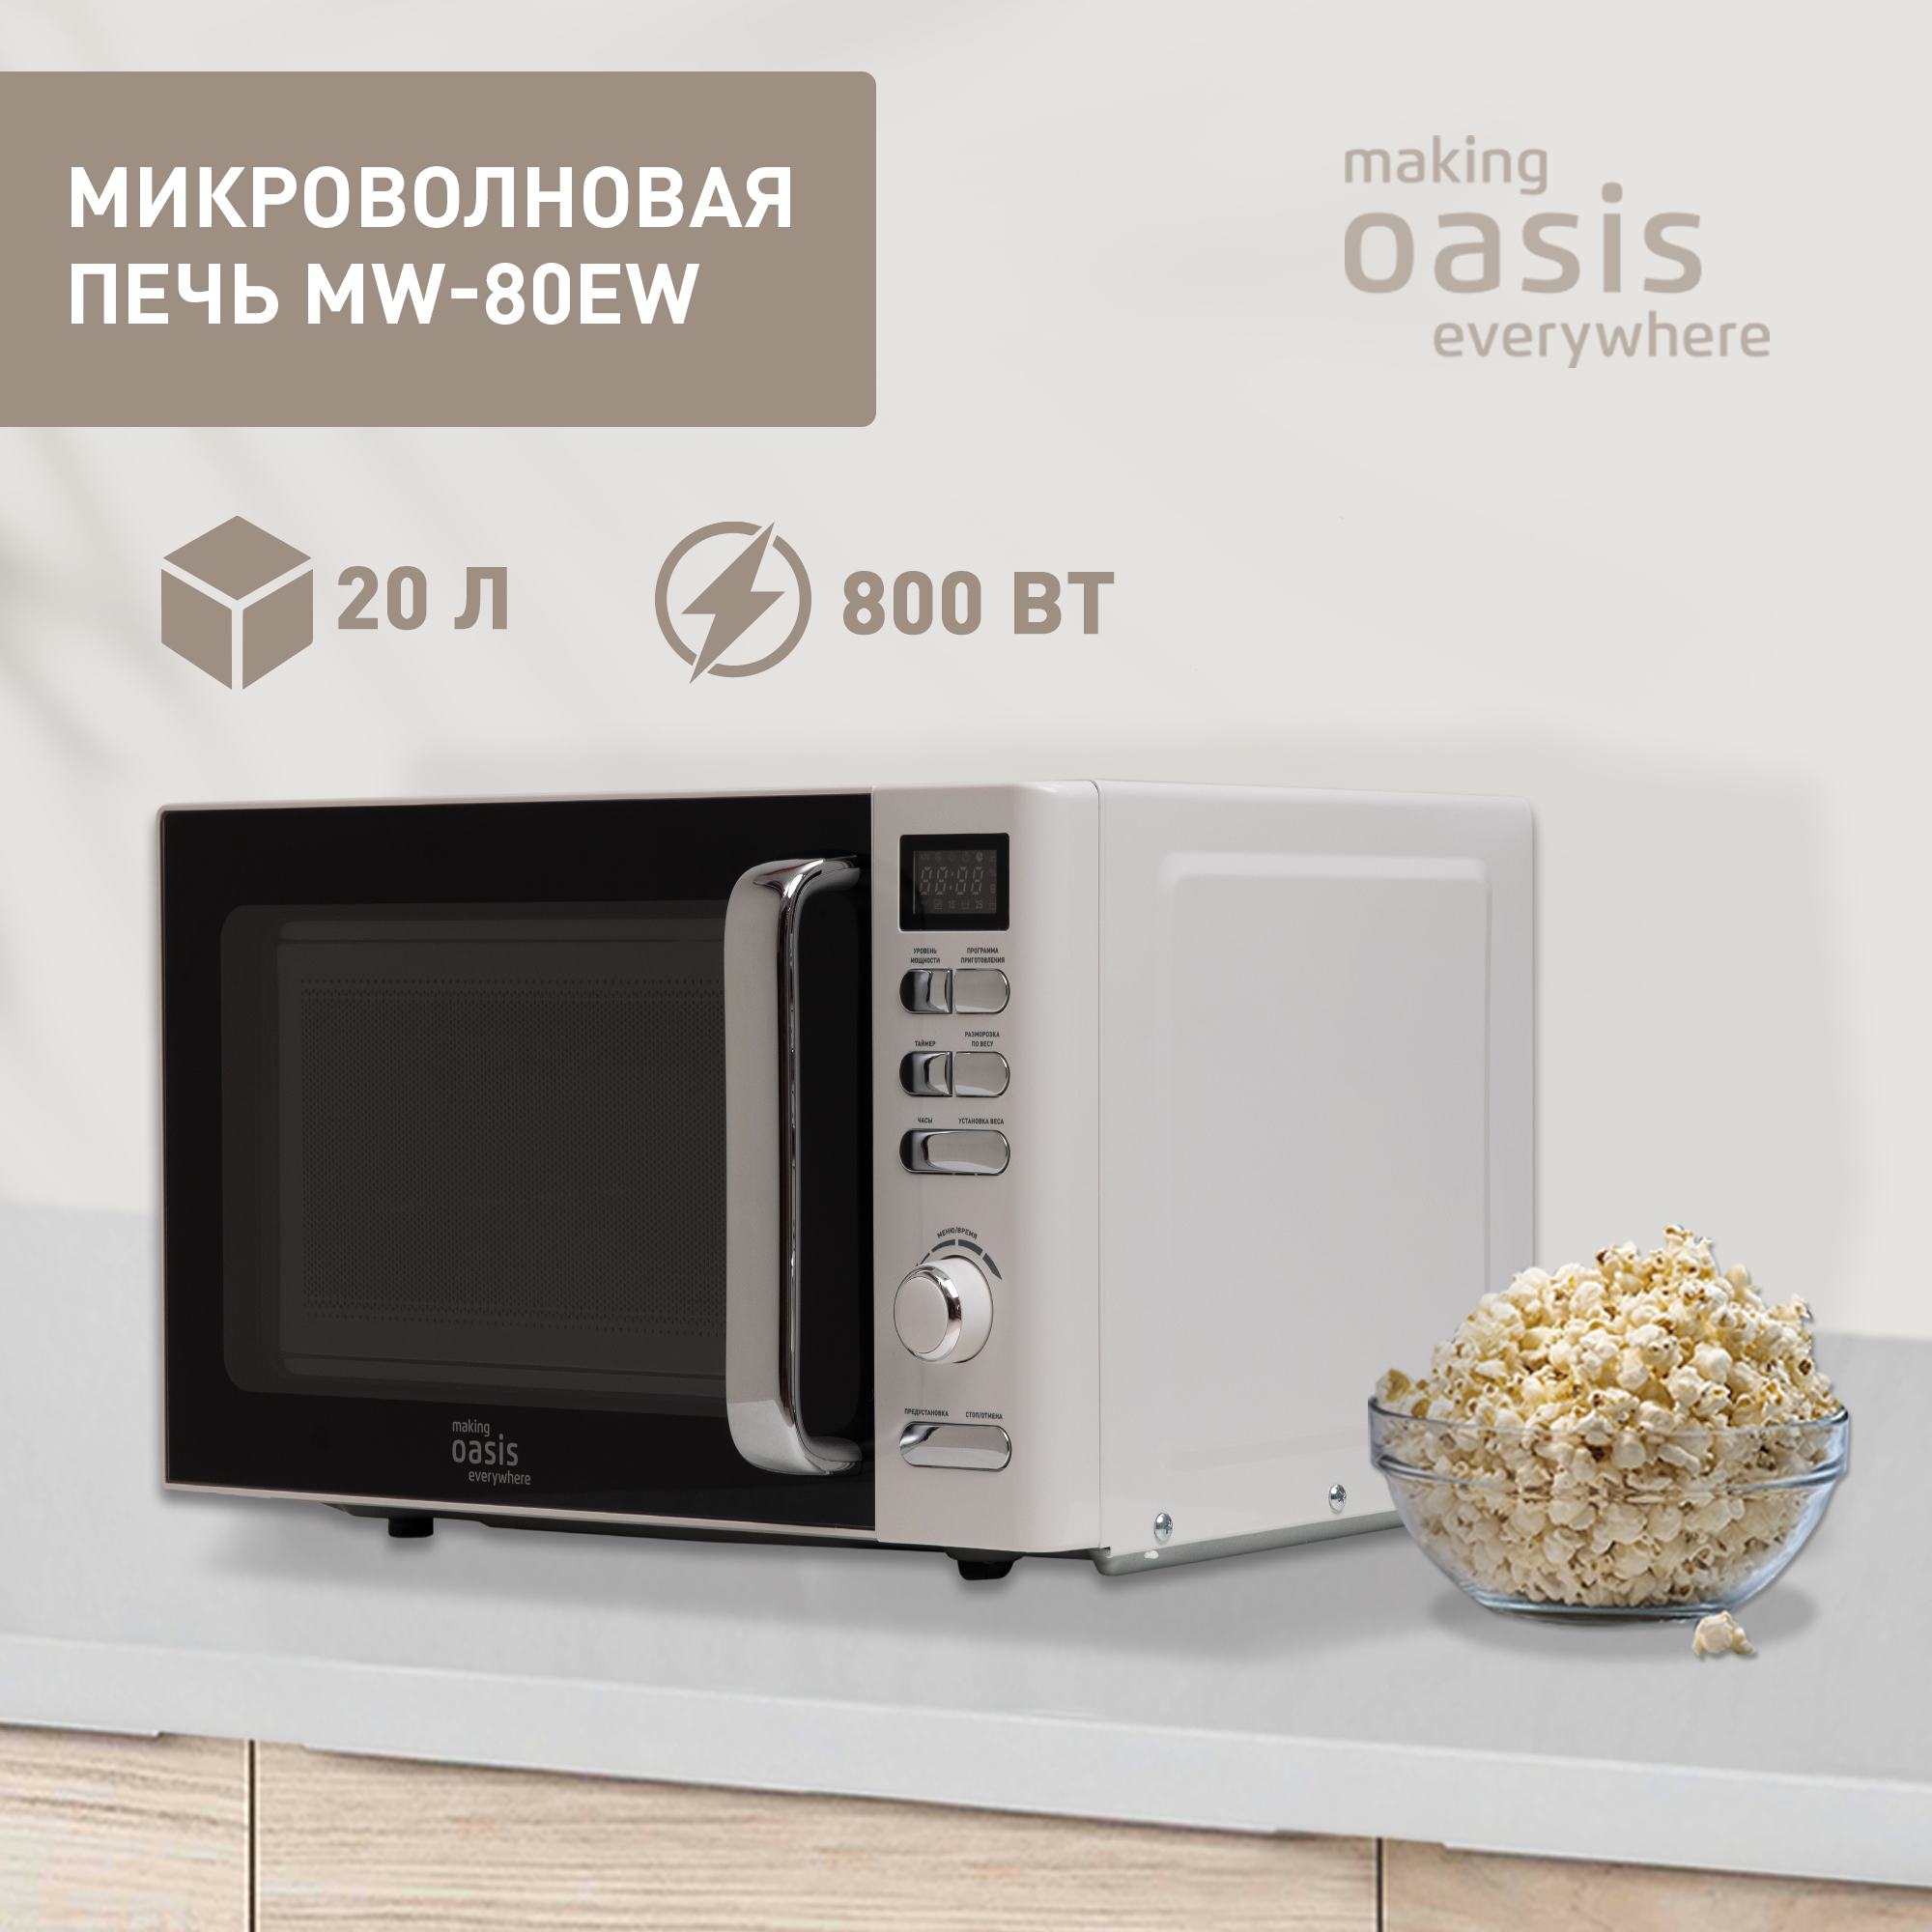 Микроволновая печь соло making oasis everywhere MW-80EW белый, купить в Москве, цены в интернет-магазинах на Мегамаркет